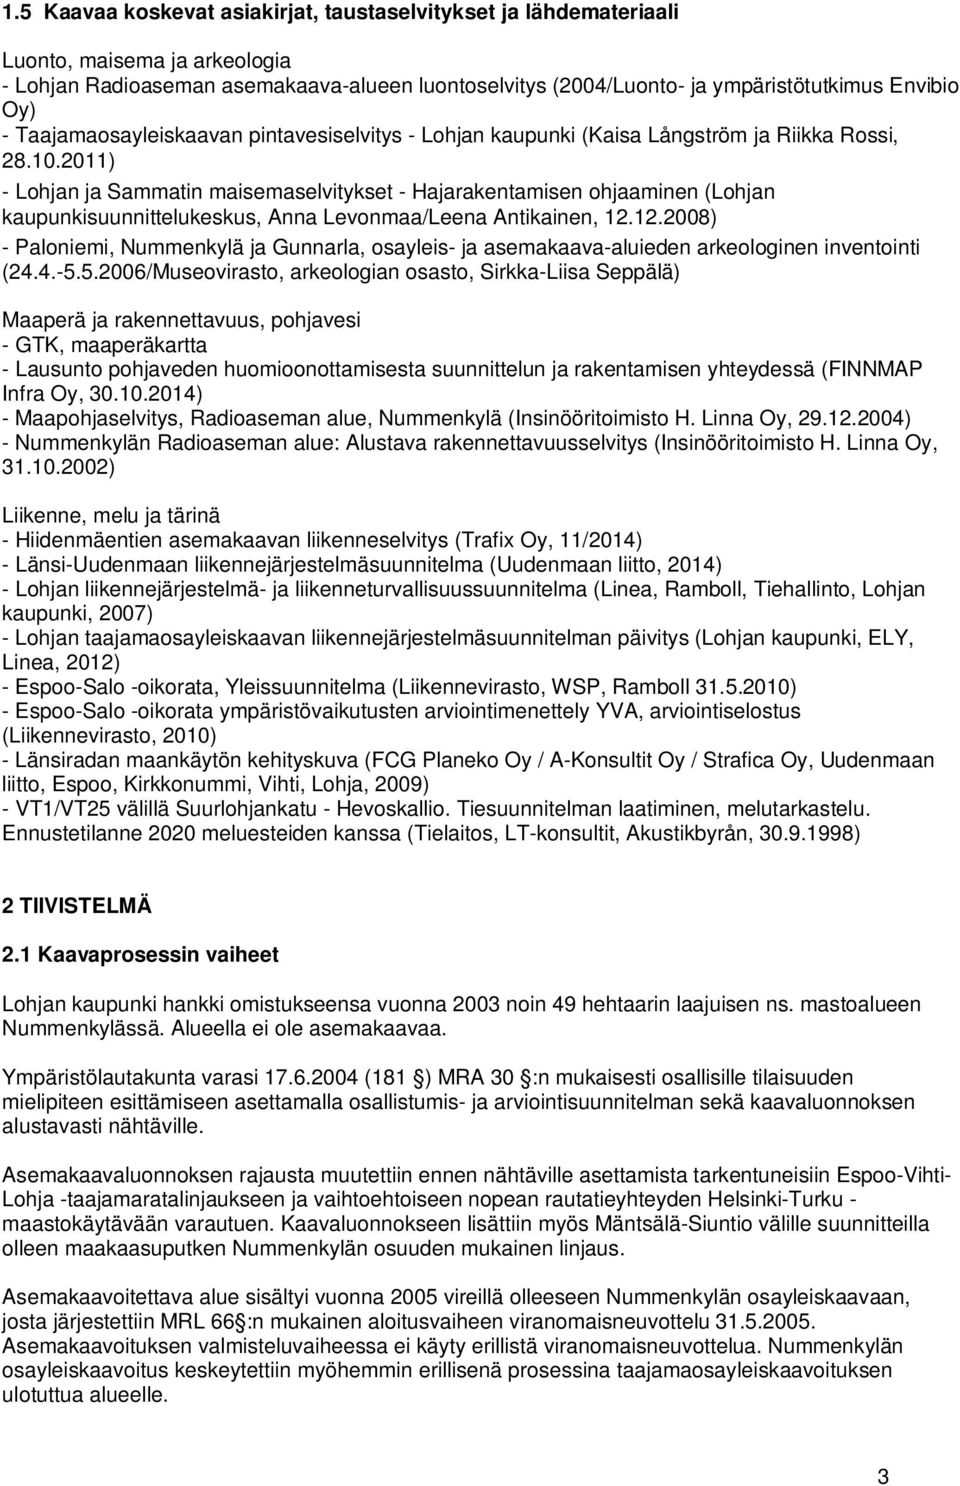 2011) - Lohjan ja Sammatin maisemaselvitykset - Hajarakentamisen ohjaaminen (Lohjan kaupunkisuunnittelukeskus, Anna Levonmaa/Leena Antikainen, 12.